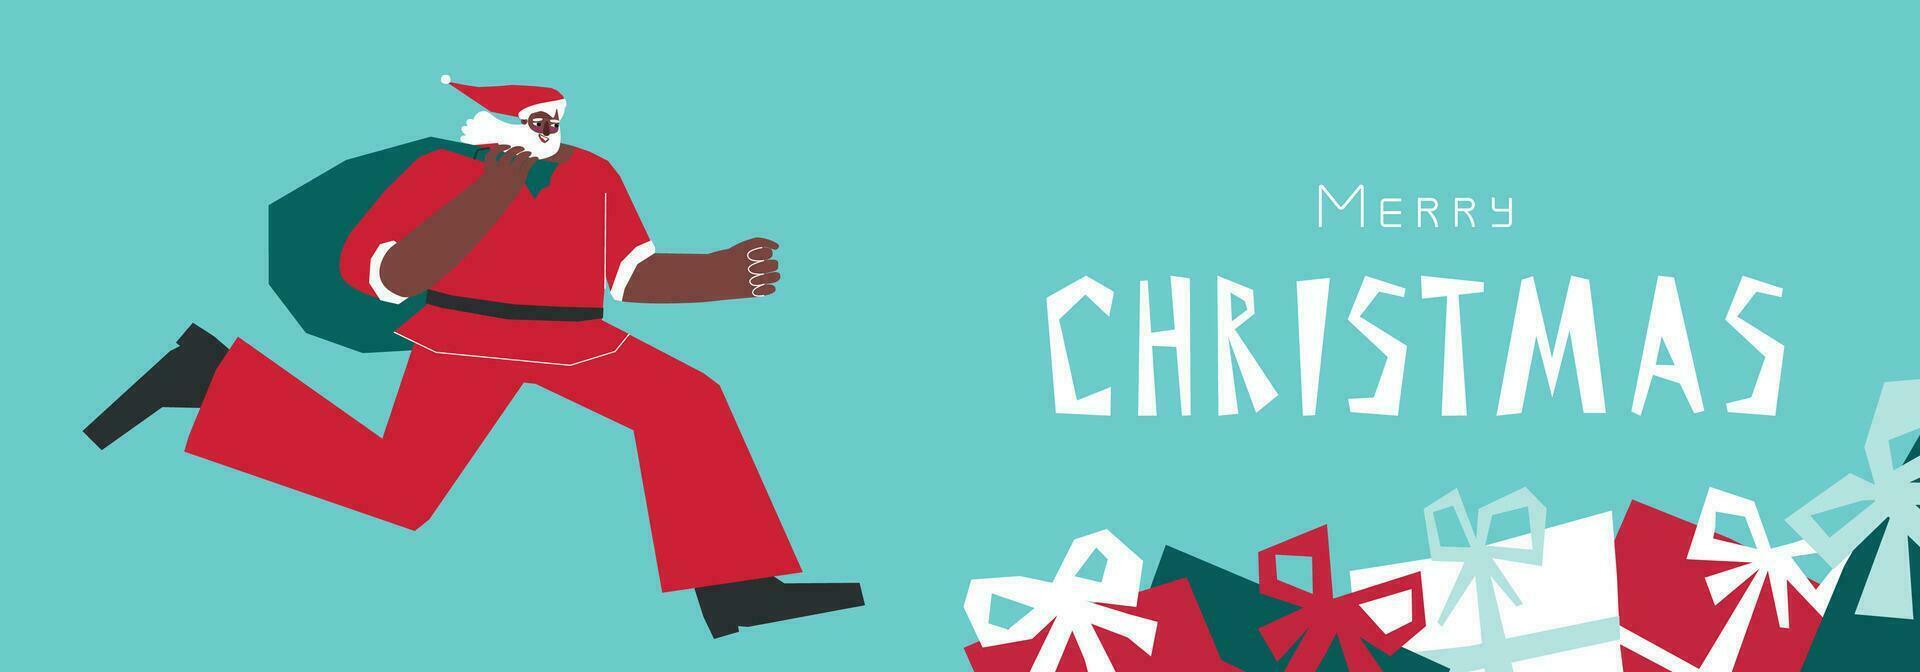 vector illustratie met vlak Afrikaanse Amerikaans karakter van de kerstman claus in rood kostuum. hij loopt en houdt zak met geschenken. horizontaal banier met tekst vrolijk Kerstmis Aan blauw achtergrond